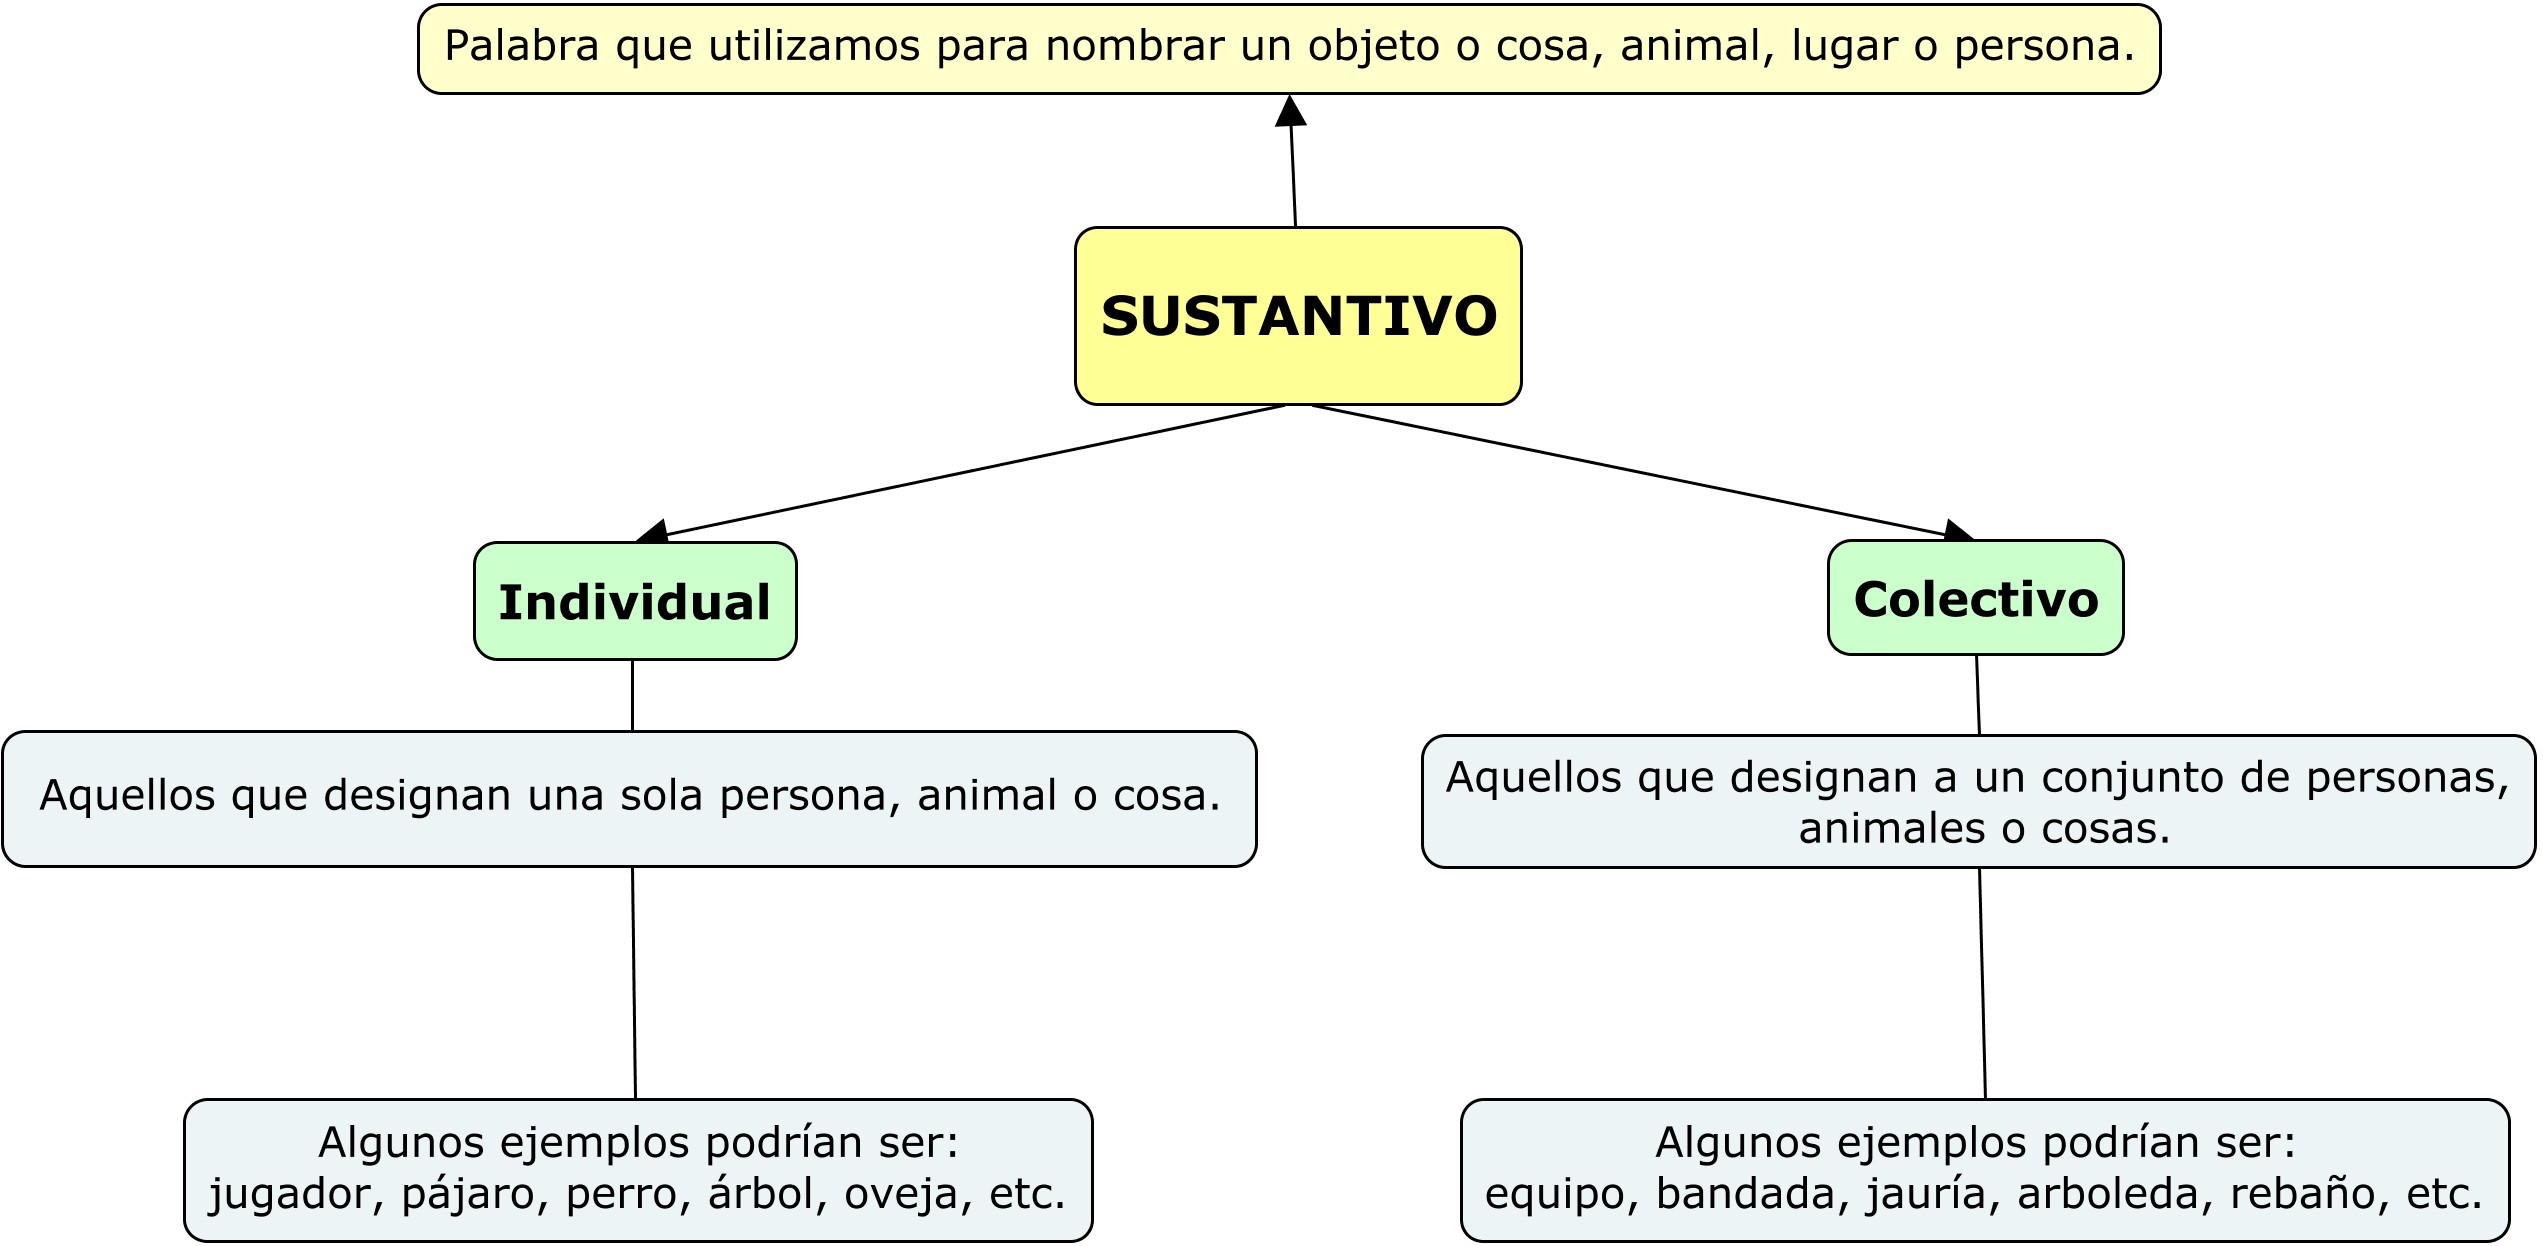 Características del sustantivo individual y colectivo